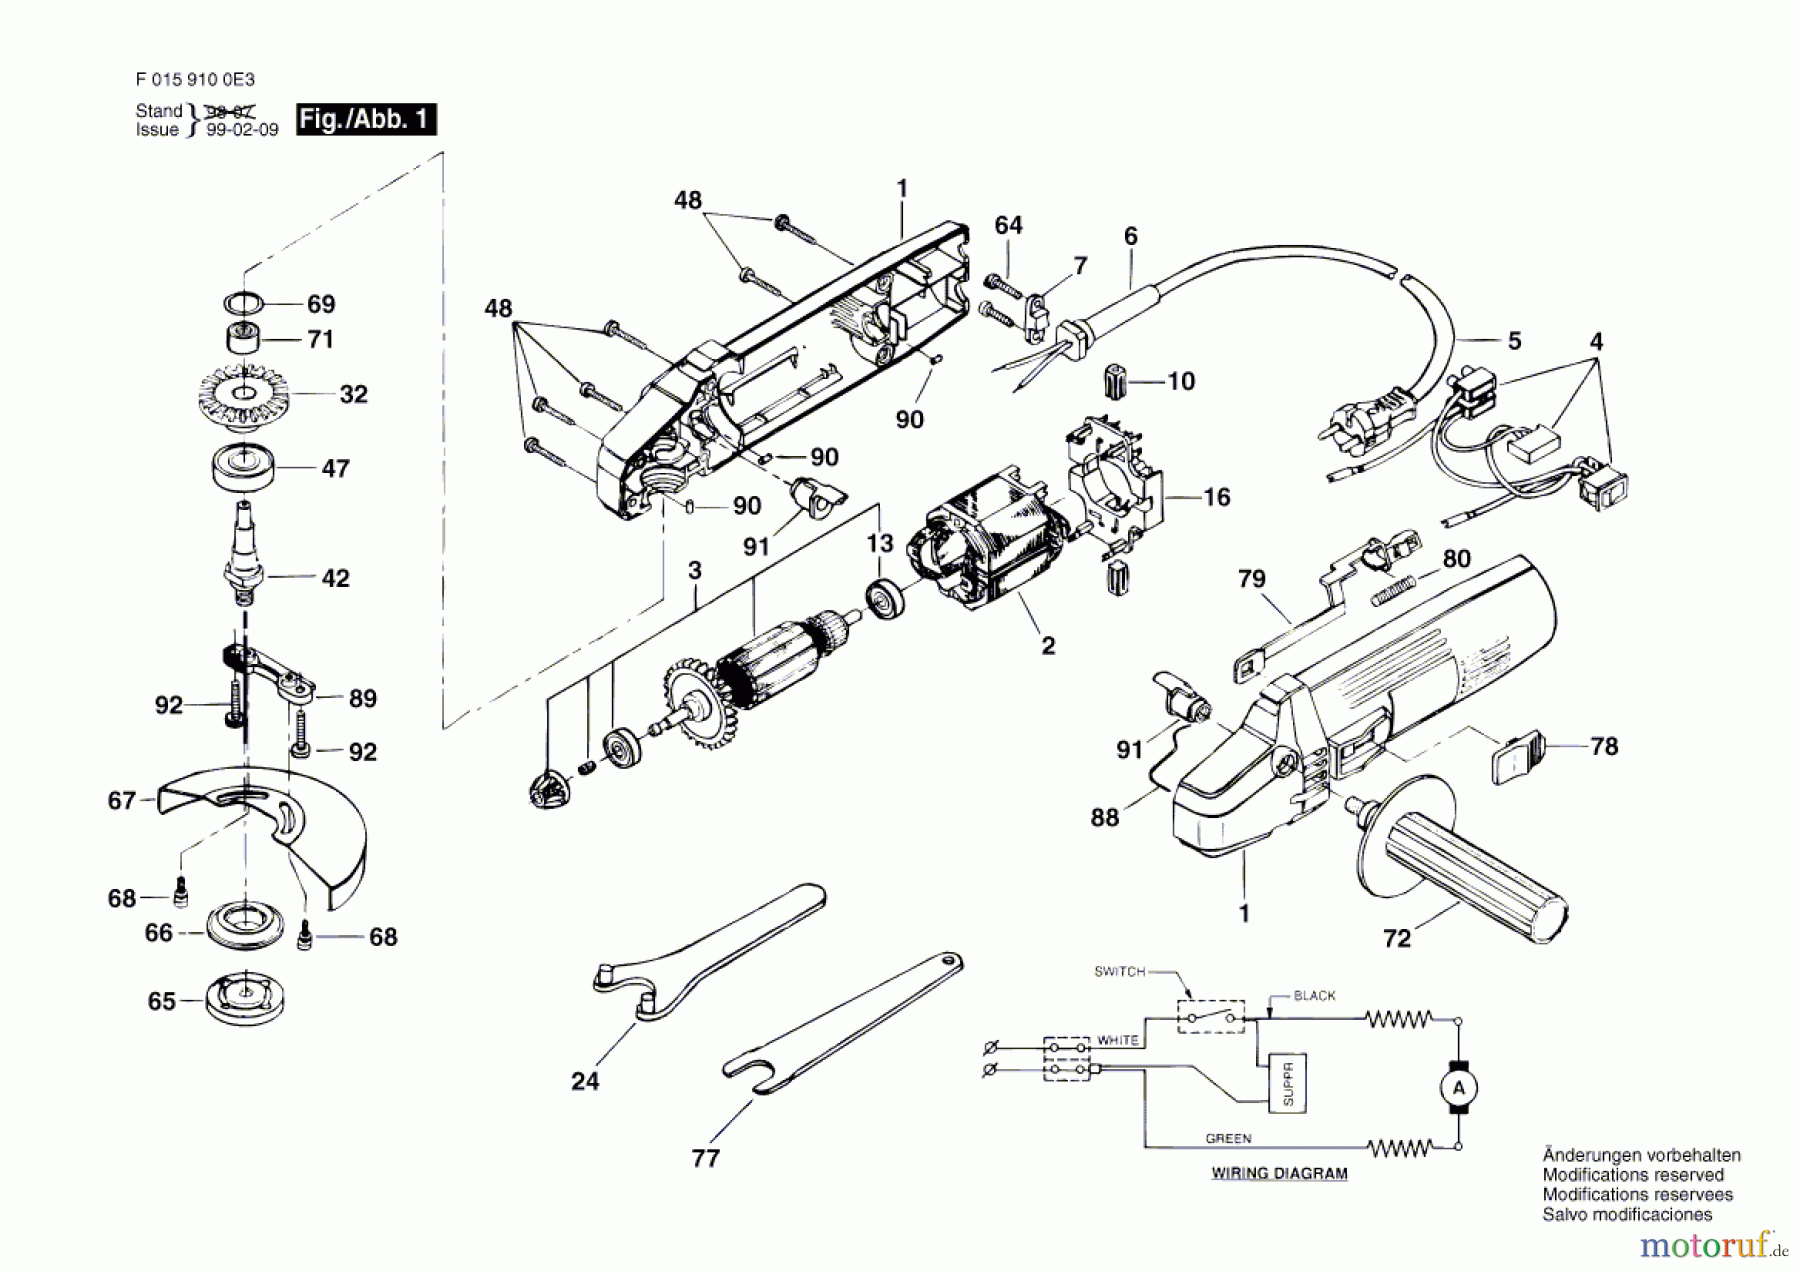  Bosch Werkzeug Winkelschleifer 9100H3 Seite 1